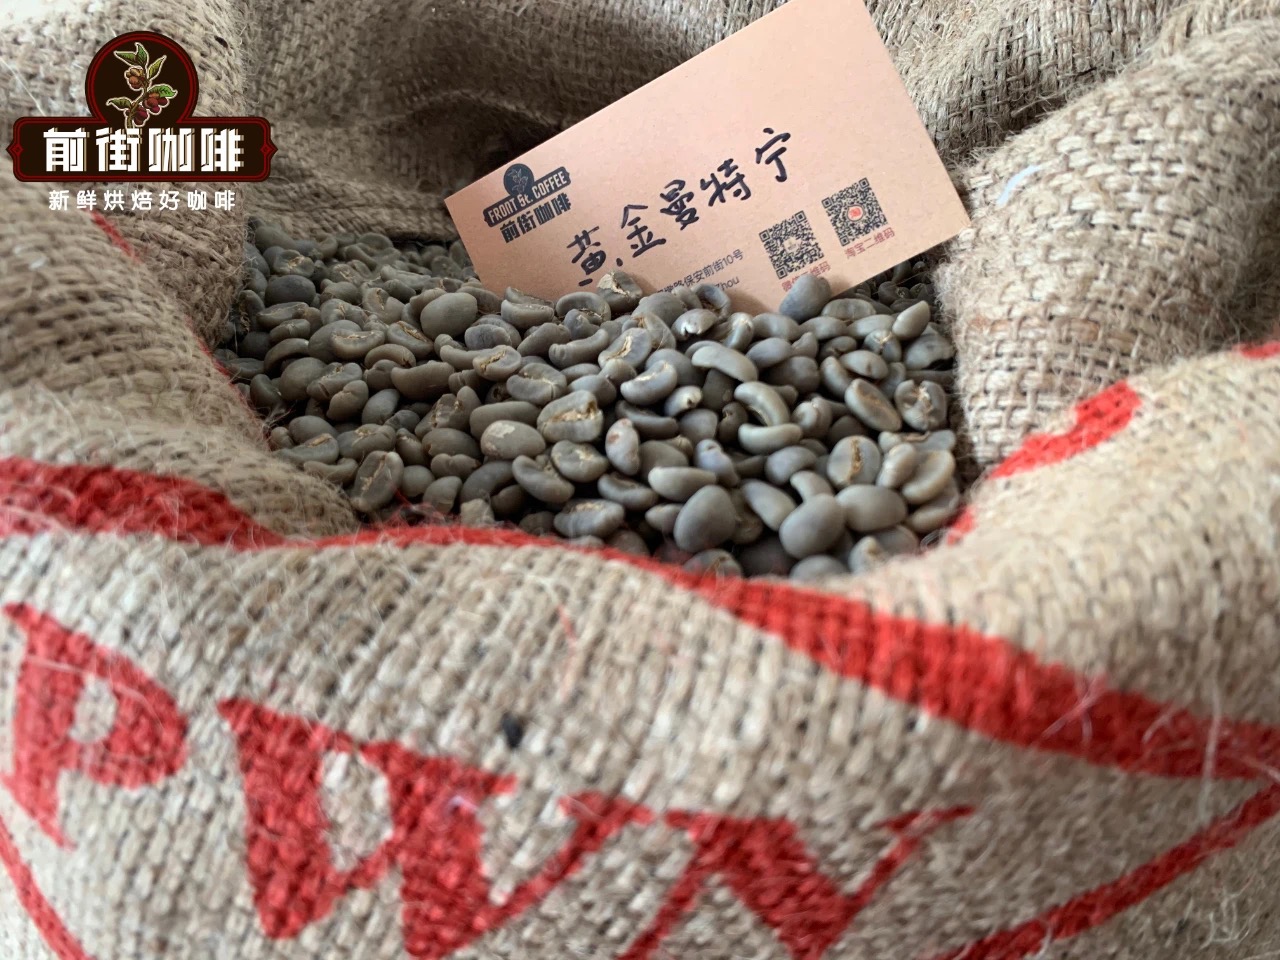 品質不錯的pwn黃金曼特寧咖啡多少錢一杯 印尼黃金曼特寧咖啡豆價格表品牌推薦